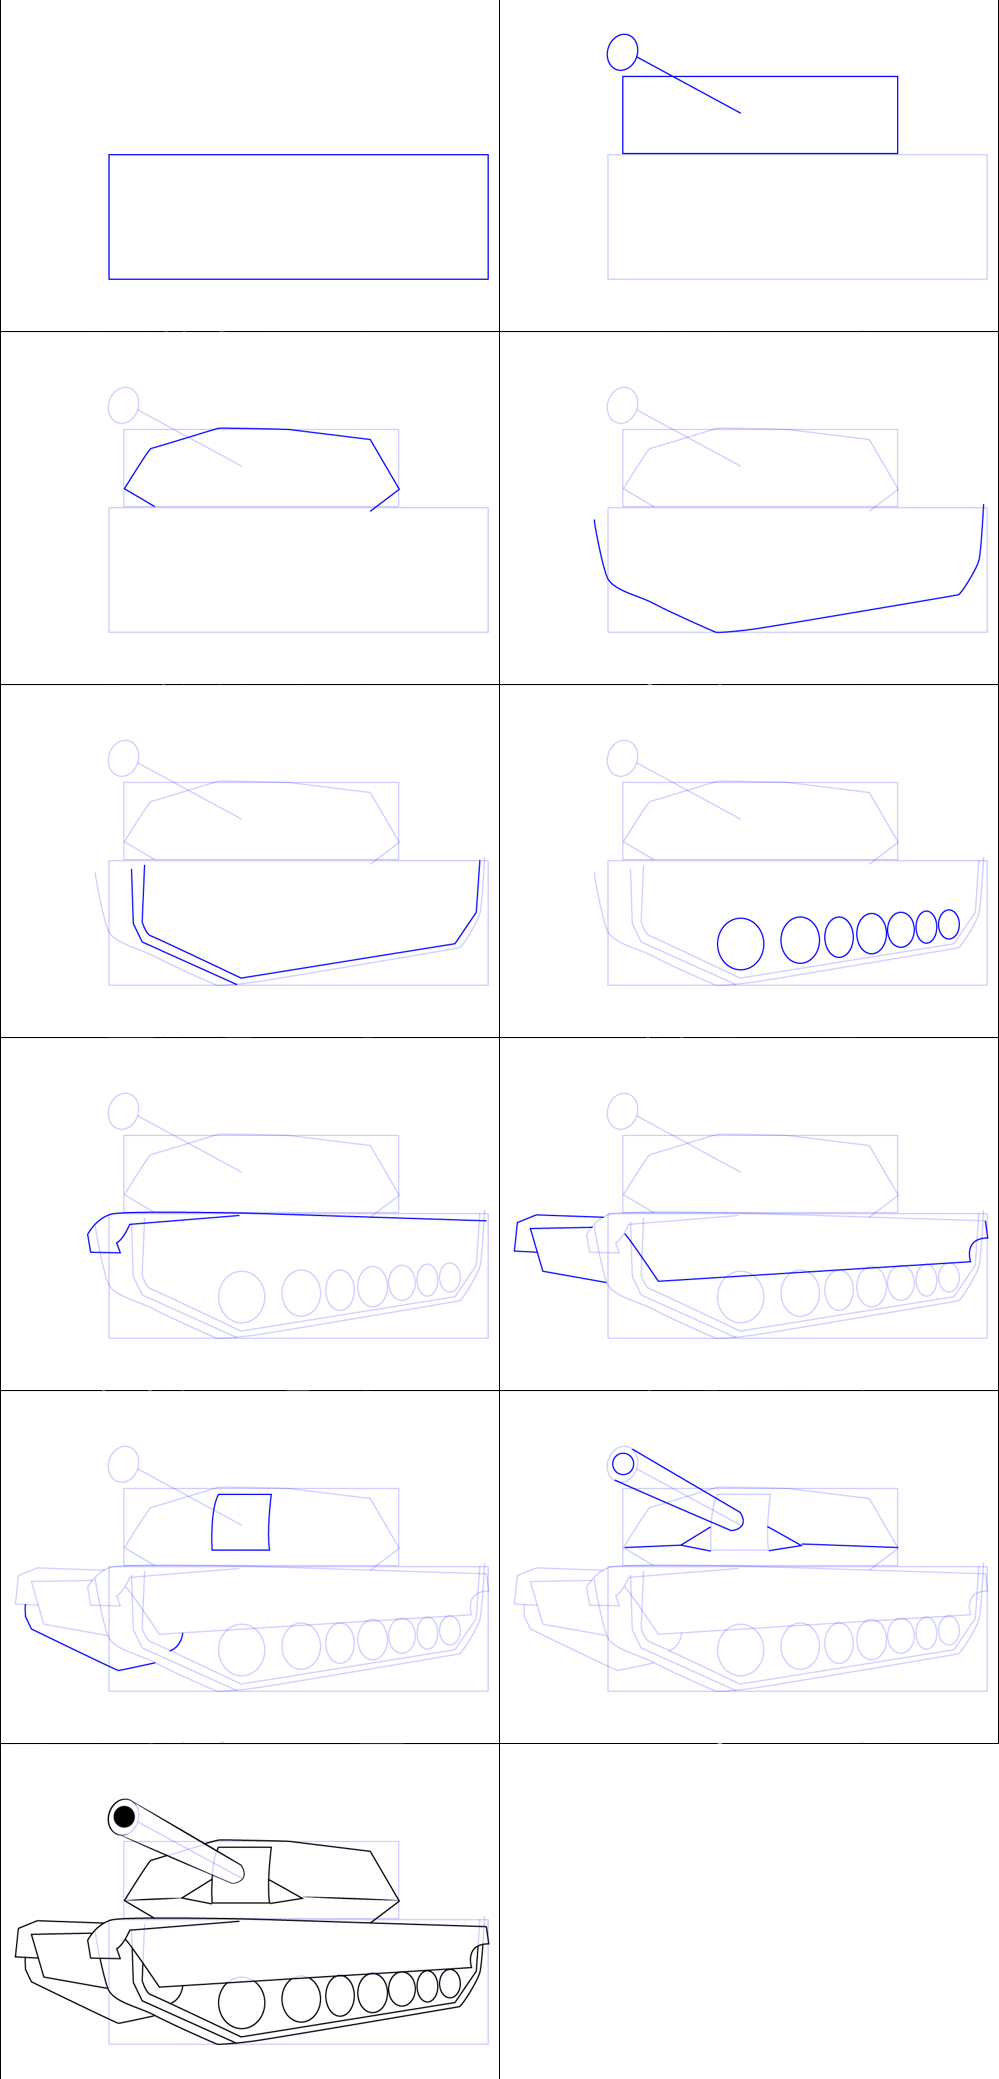 Yksinkertaisen säiliön piirtäminen (2) piirustus